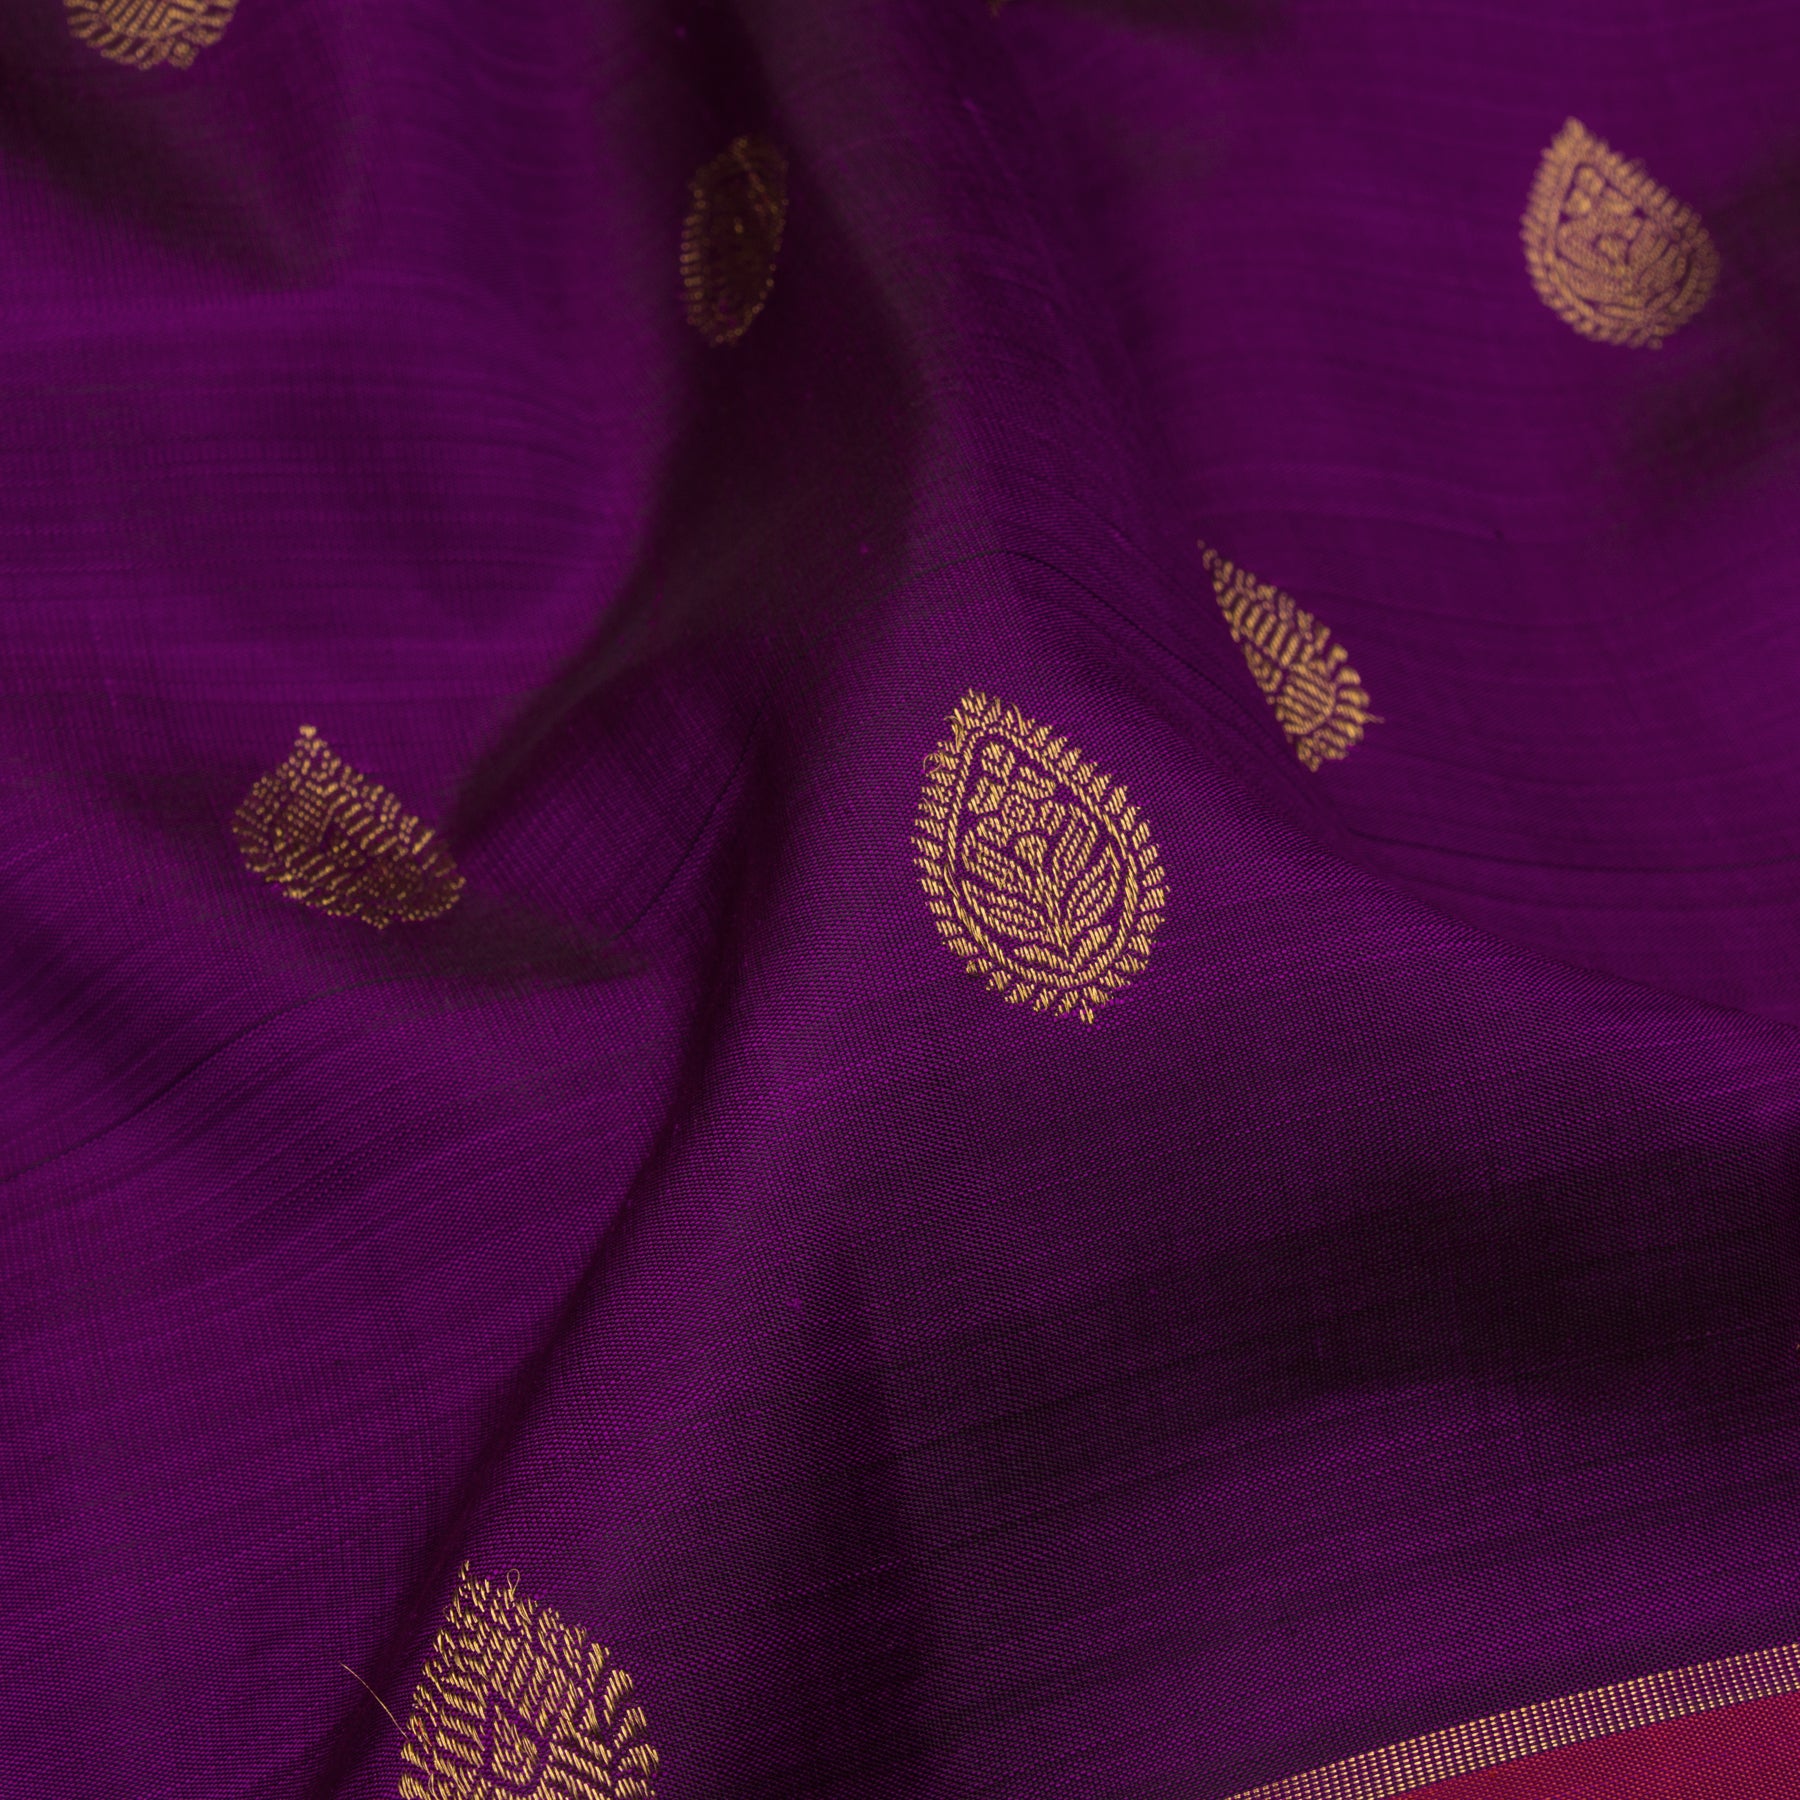 Kanakavalli Kanjivaram Silk Sari 23-599-HS001-09670 - Fabric View